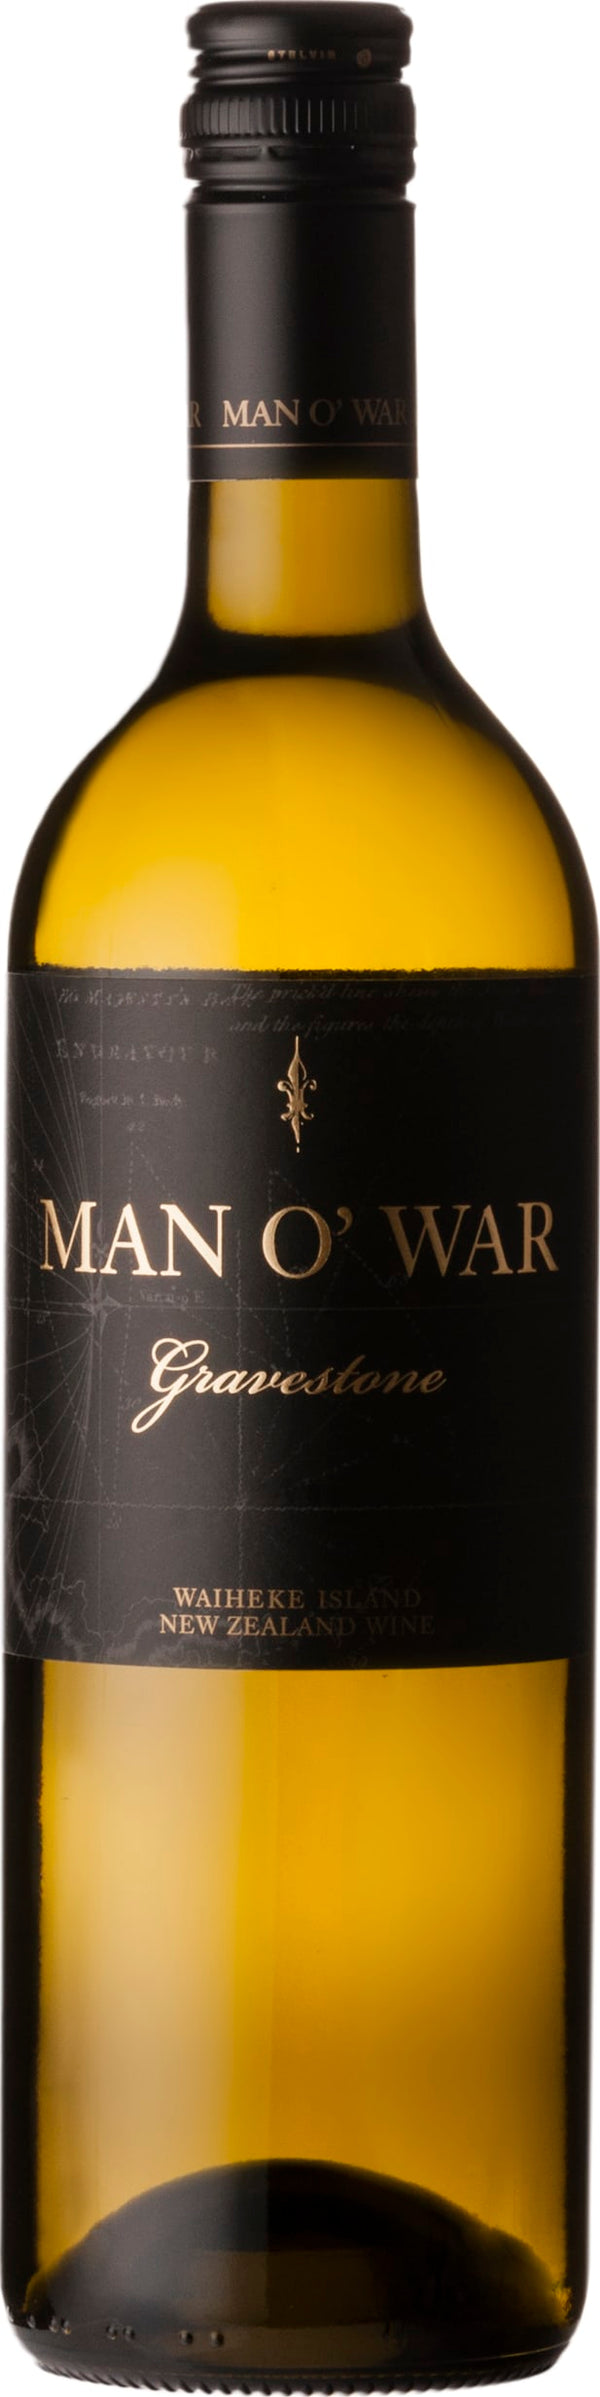 Man O War Gravestone Sauvignon Blanc Semillon 2019 6x75cl - Just Wines 